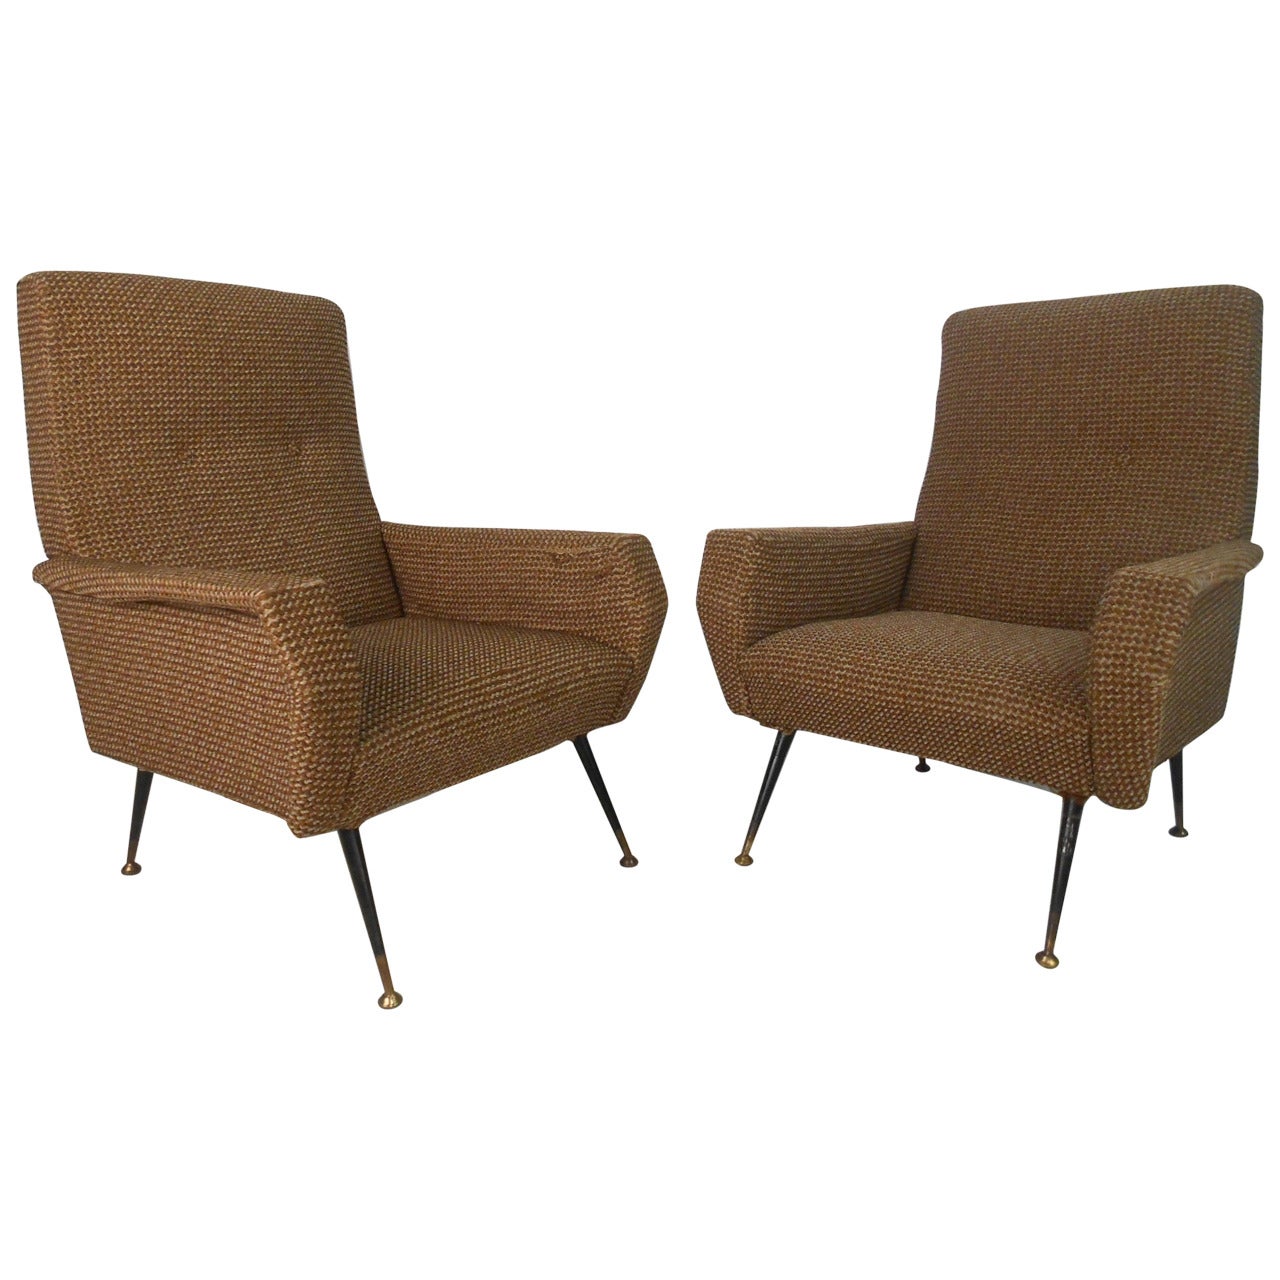 Pair of Mid-Century Modern Gio Ponti Style Armchairs